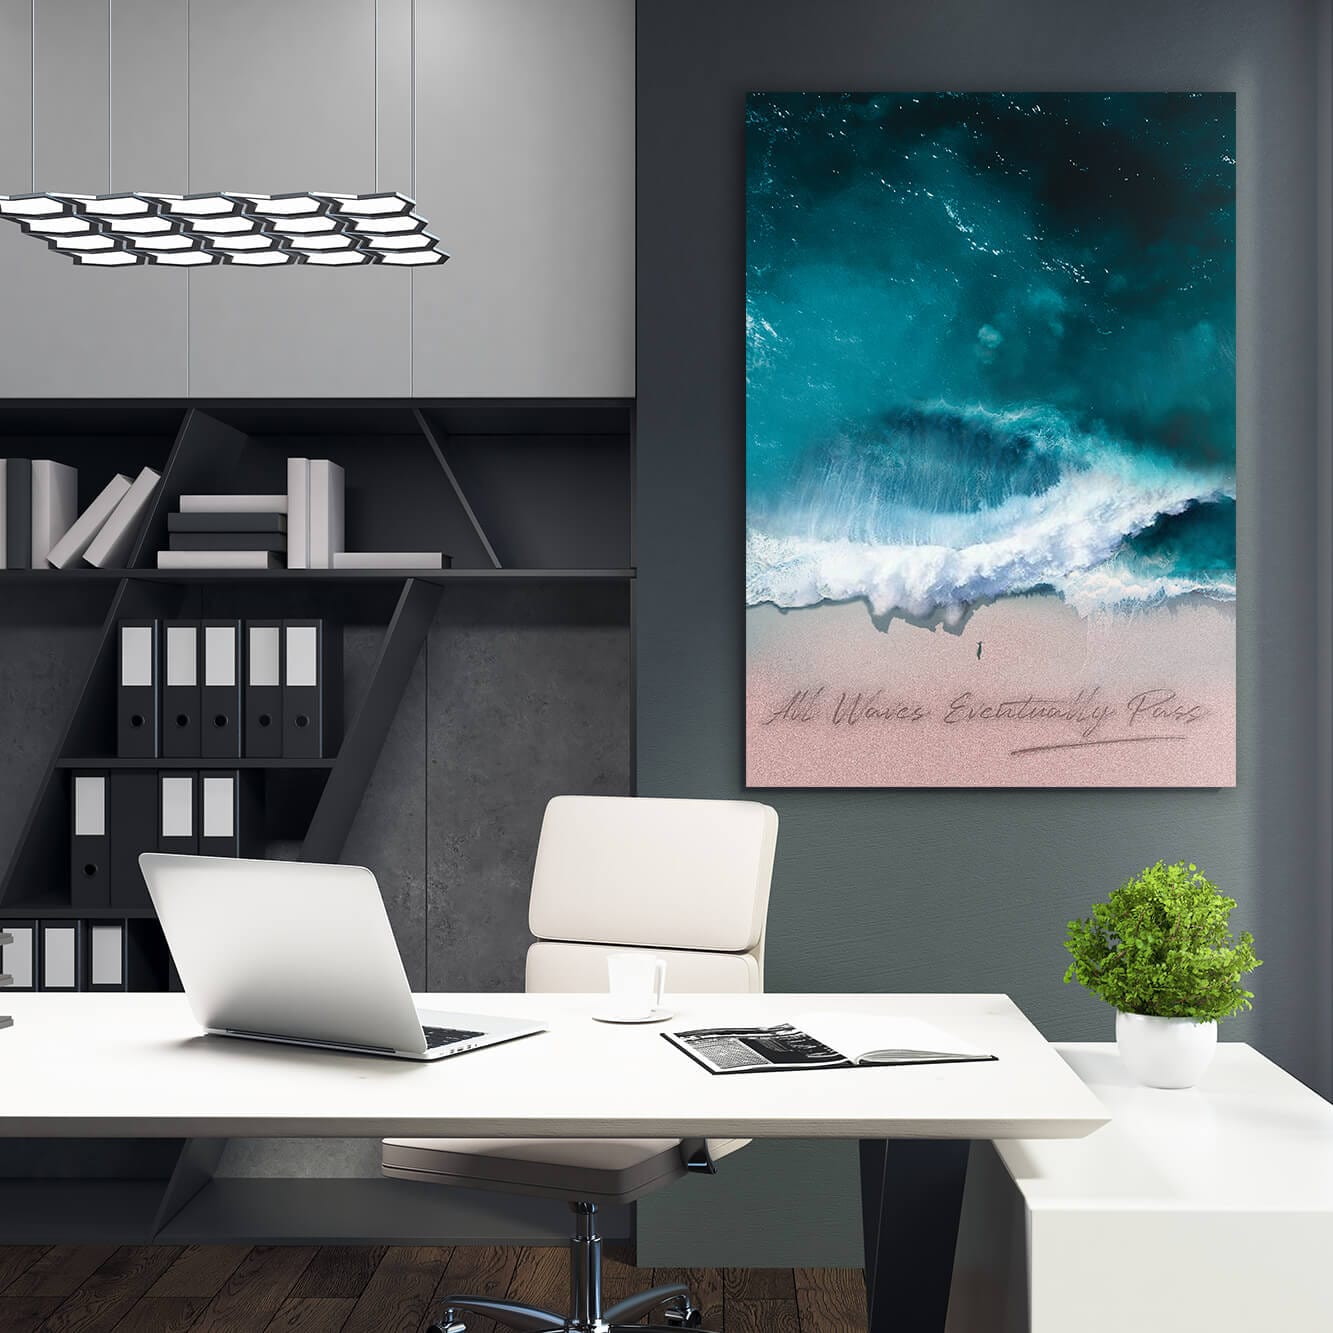 All Waves Eventually Pass Art Wall Art | Inspirational Wall Art Motivational Wall Art Quotes Office Art | ImpaktMaker Exclusive Canvas Art Portrait